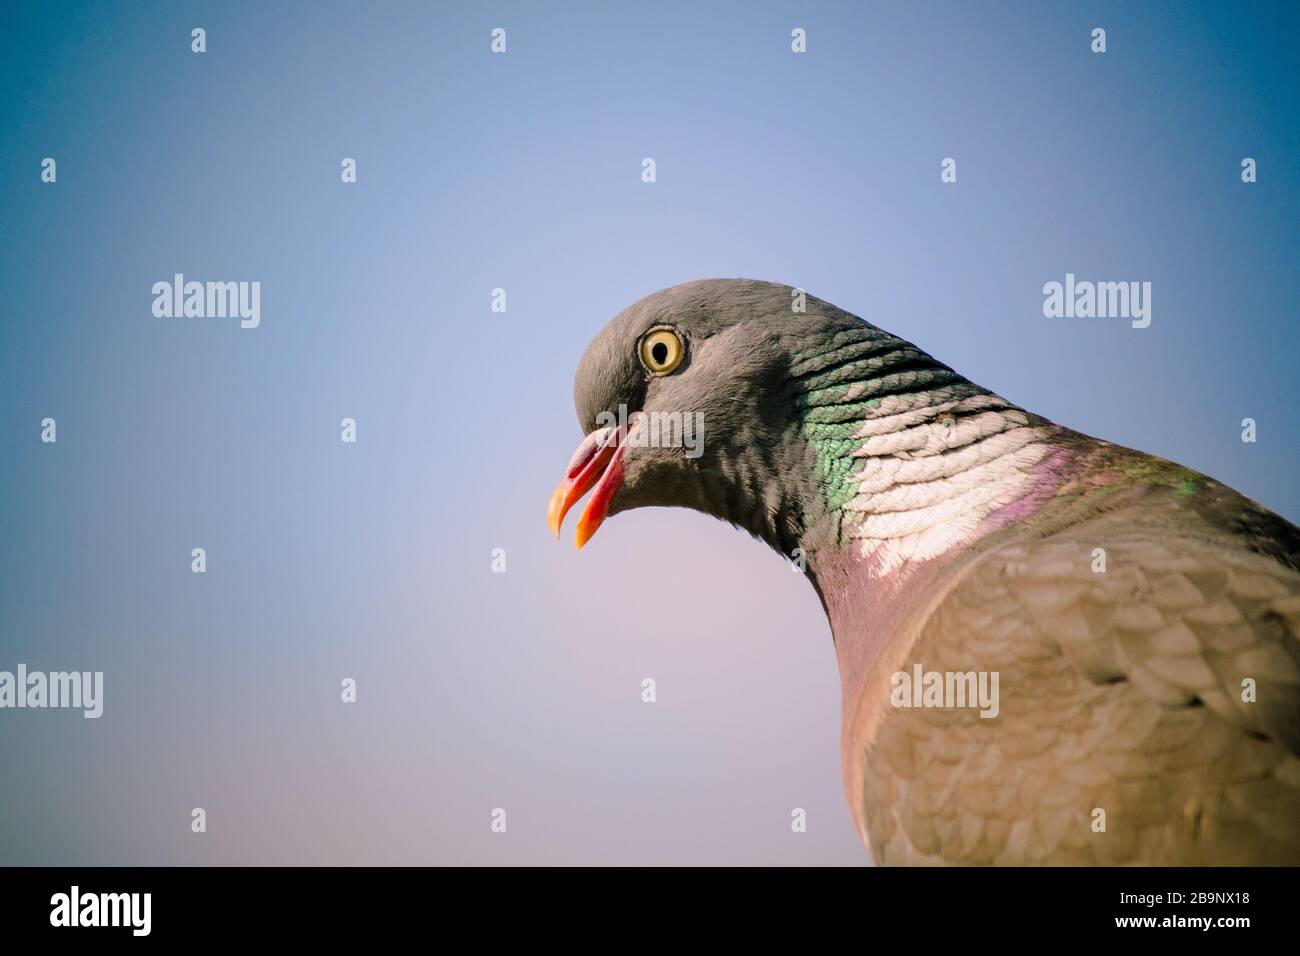 Gros plan de pigeon en bois commun (Columba palumbus), en profil, avec fond bleu ciel le jour ensoleillé. Bec légèrement ouvert. Banque D'Images